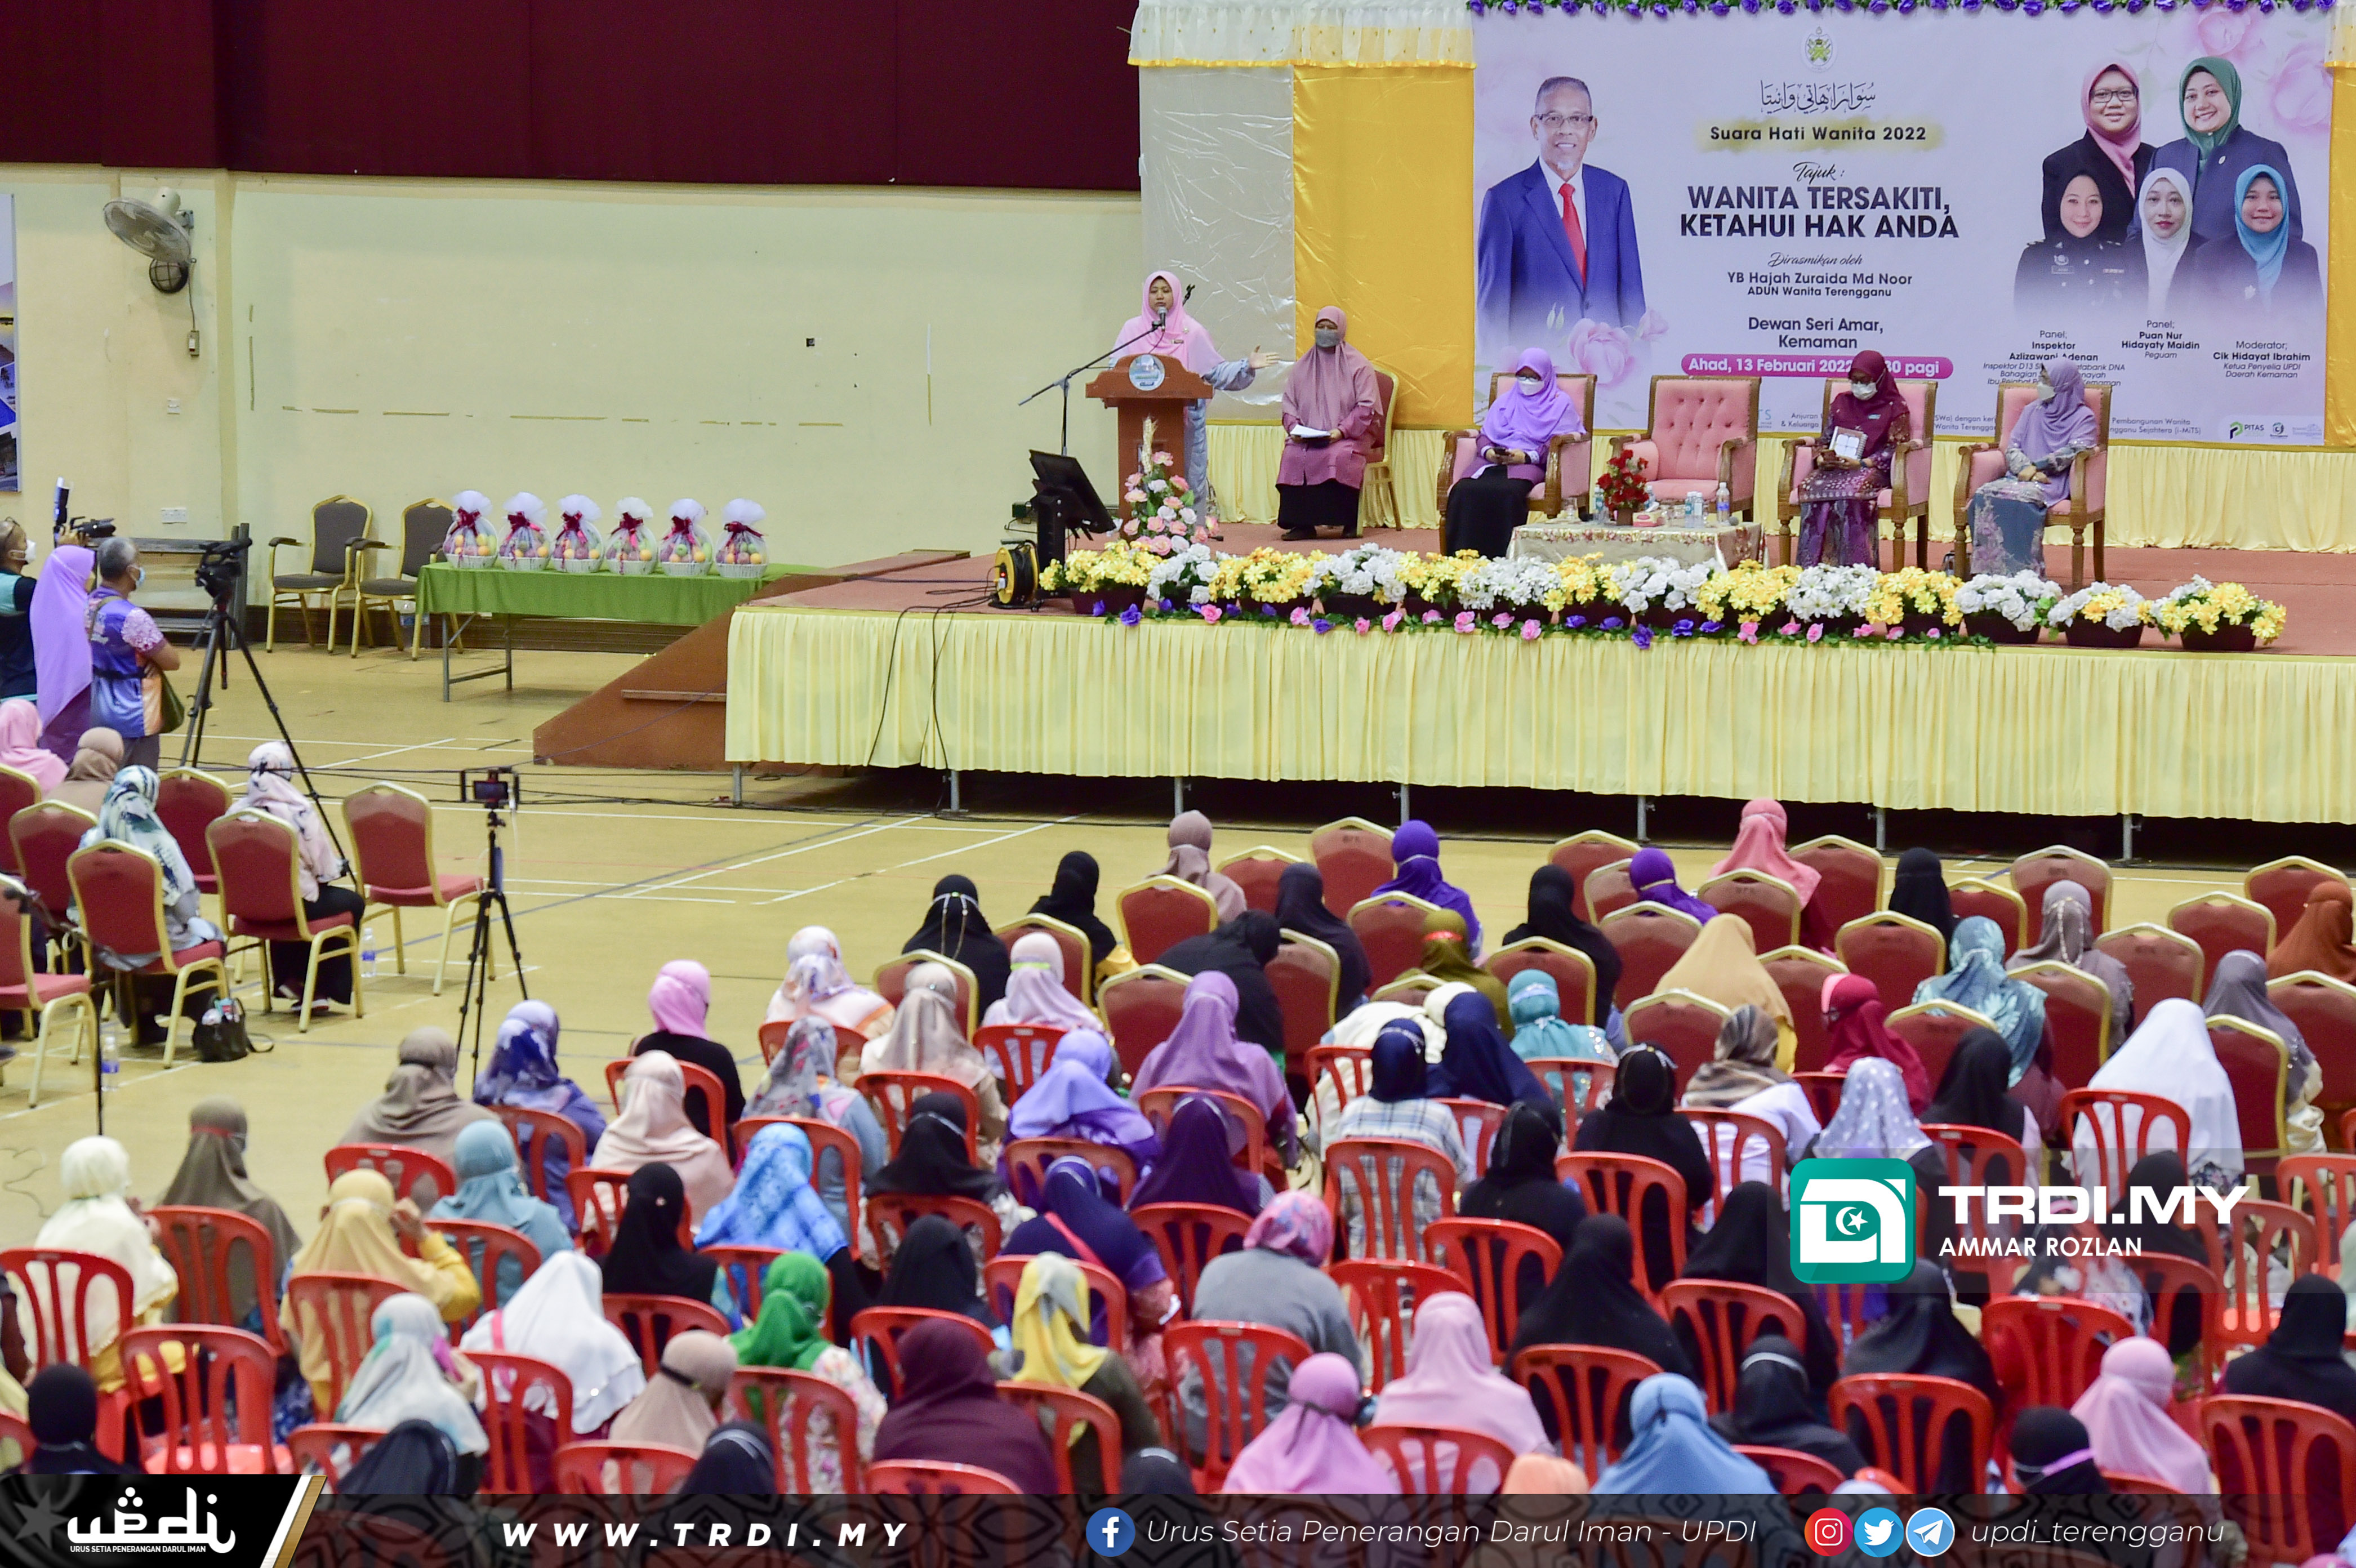 YB Hajah Zuraida Md Noor, Adun Wanita Terengganu merasmikan Program Suara Hati Wanita 2022 